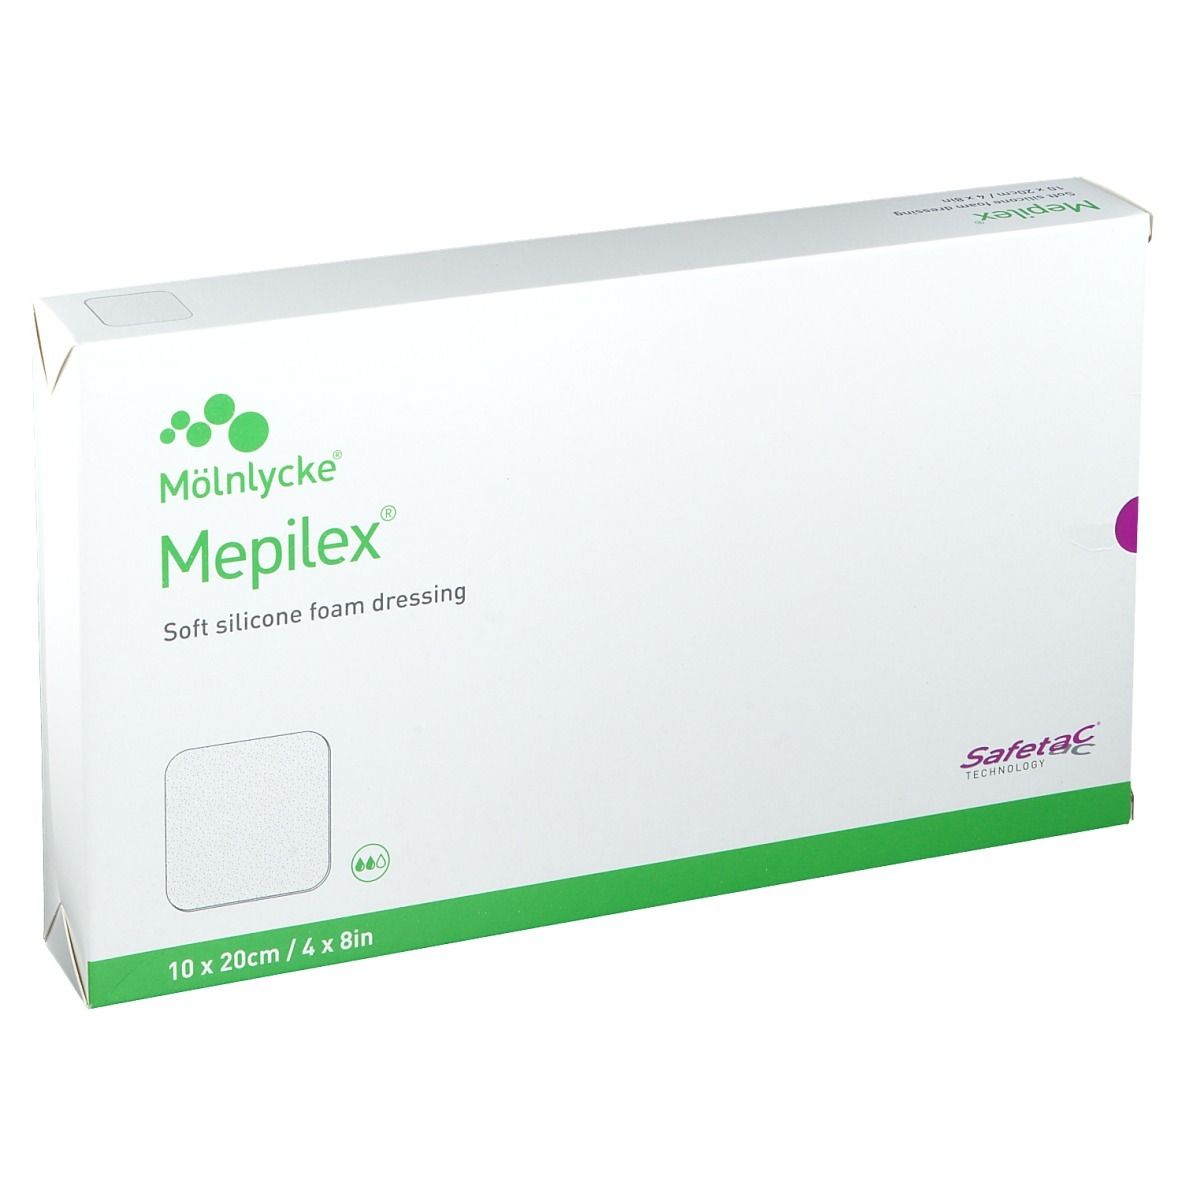 Image of Mepilex 10 cm x 20 cm